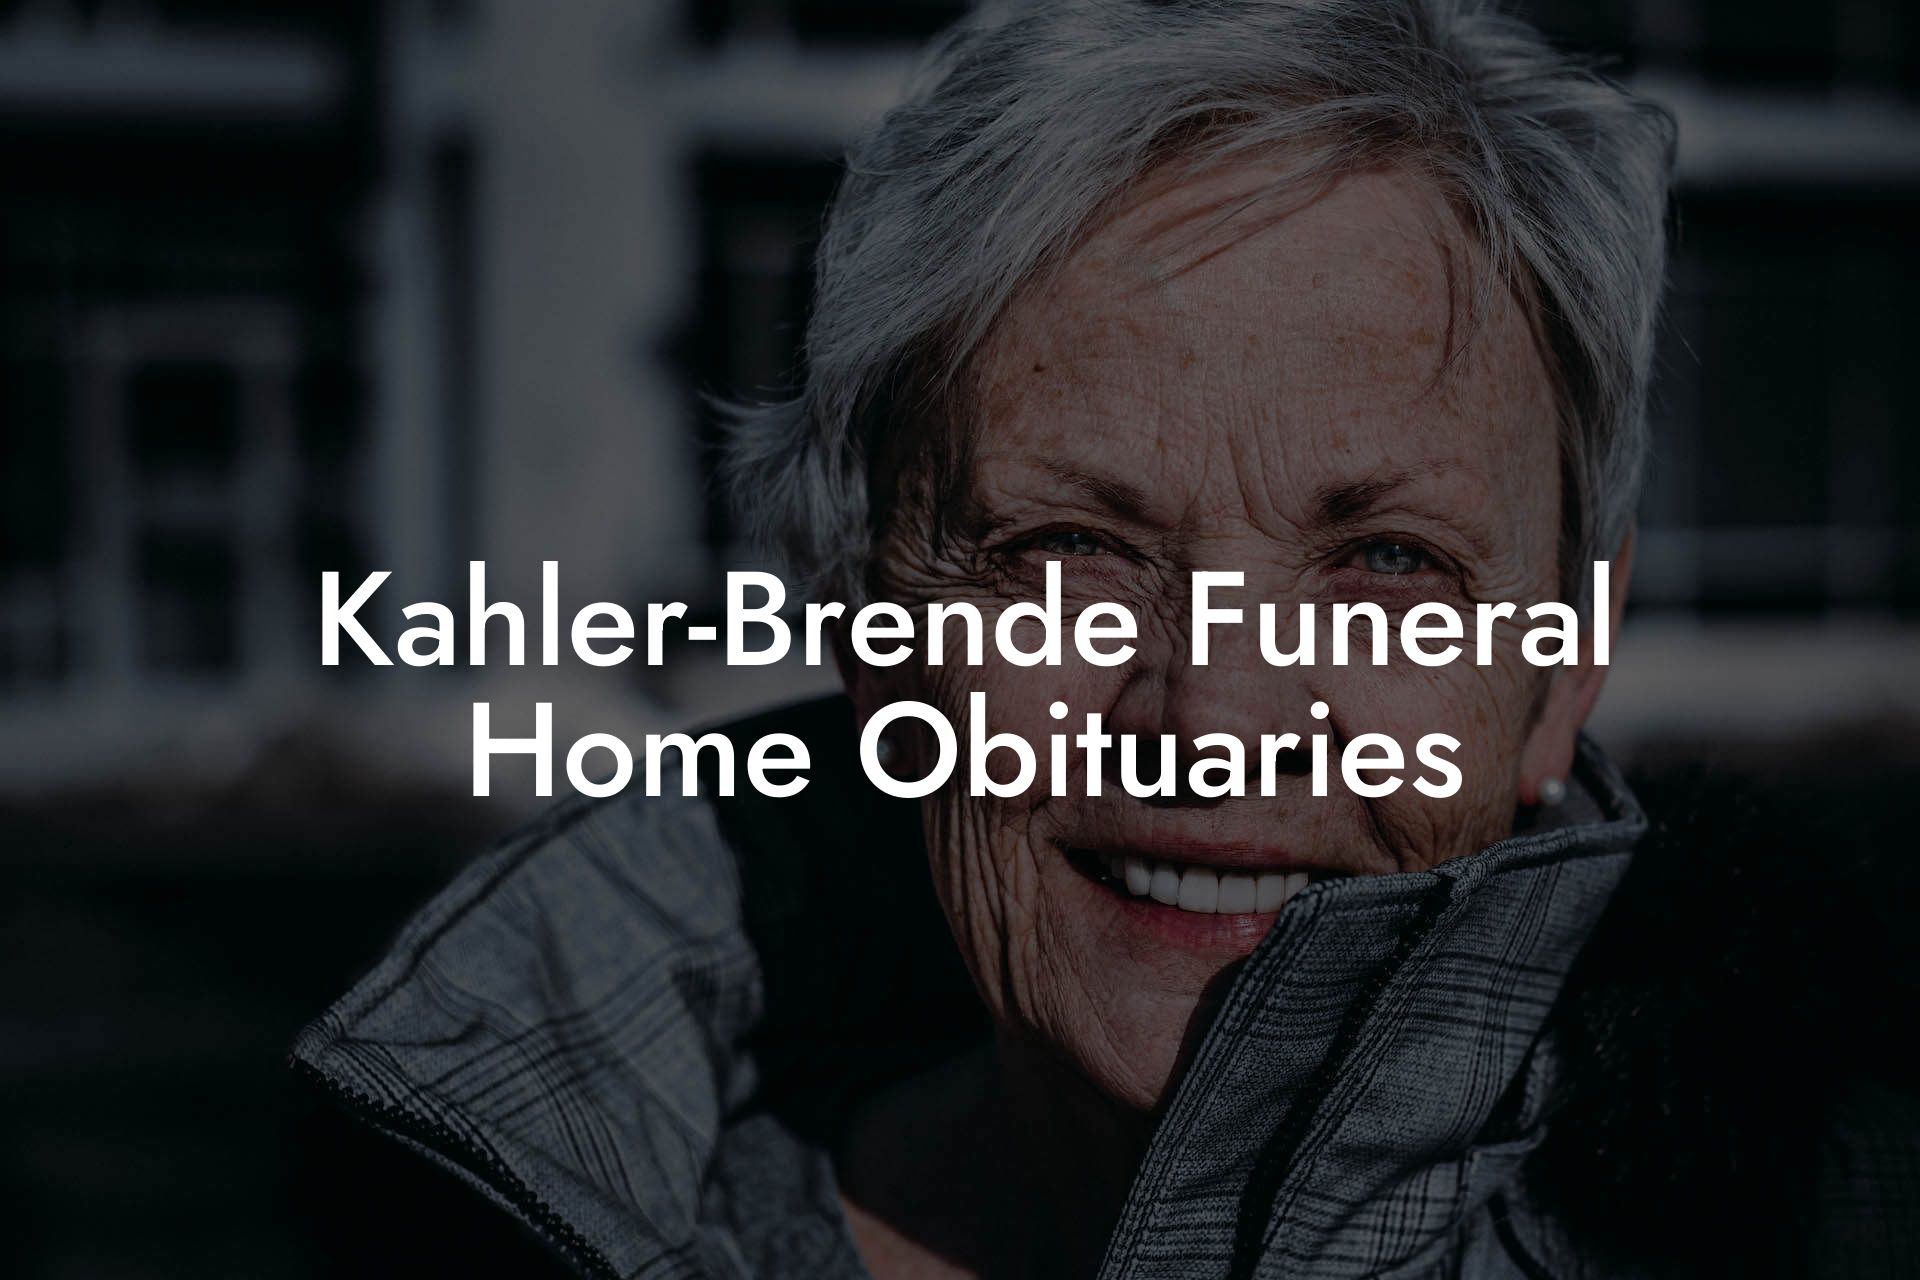 Kahler-Brende Funeral Home Obituaries